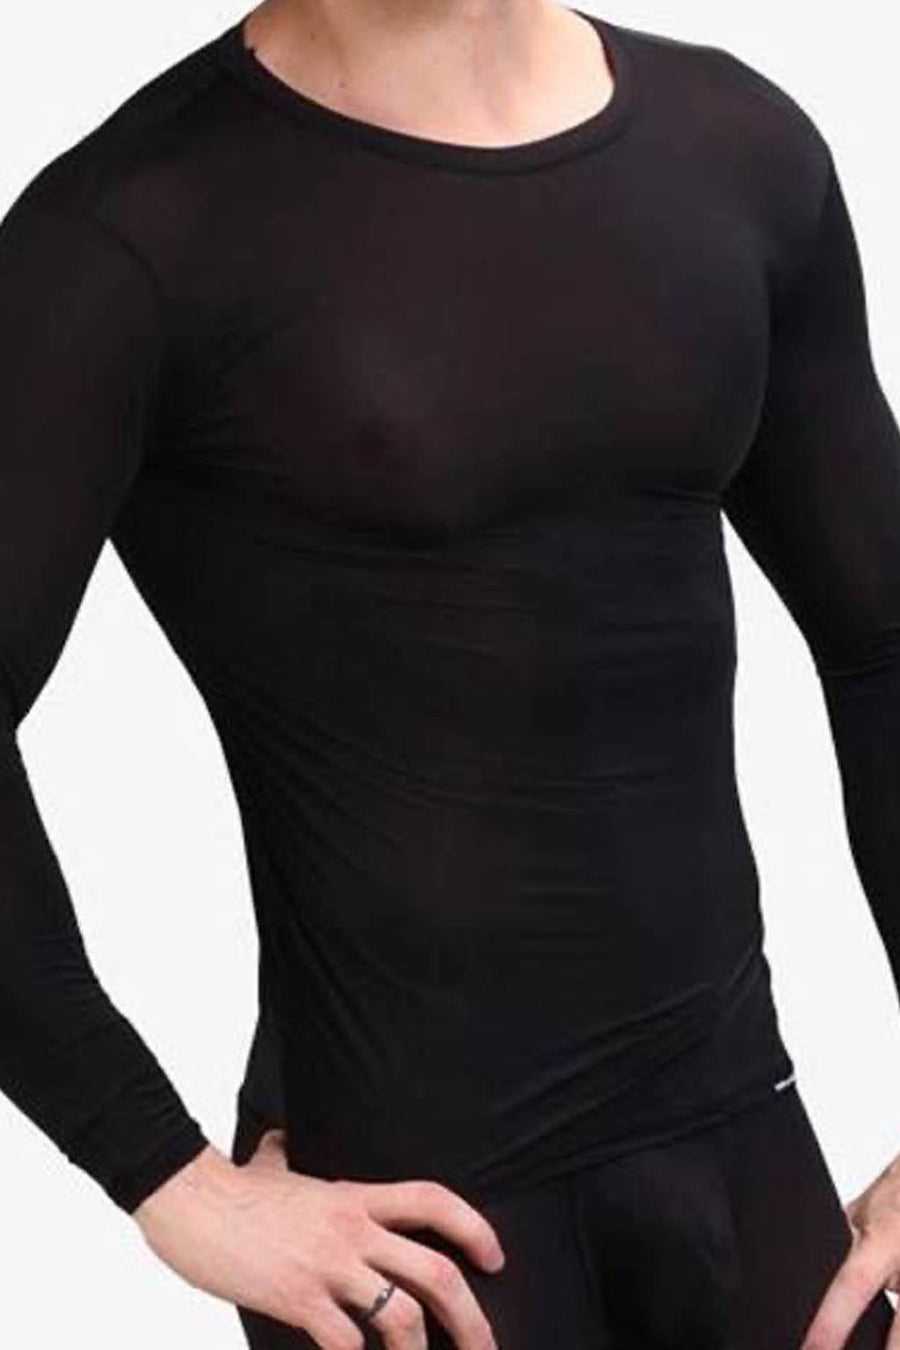 Manview Mens Sheer Long Sleeve Top Thermal Underwear – Bodywear